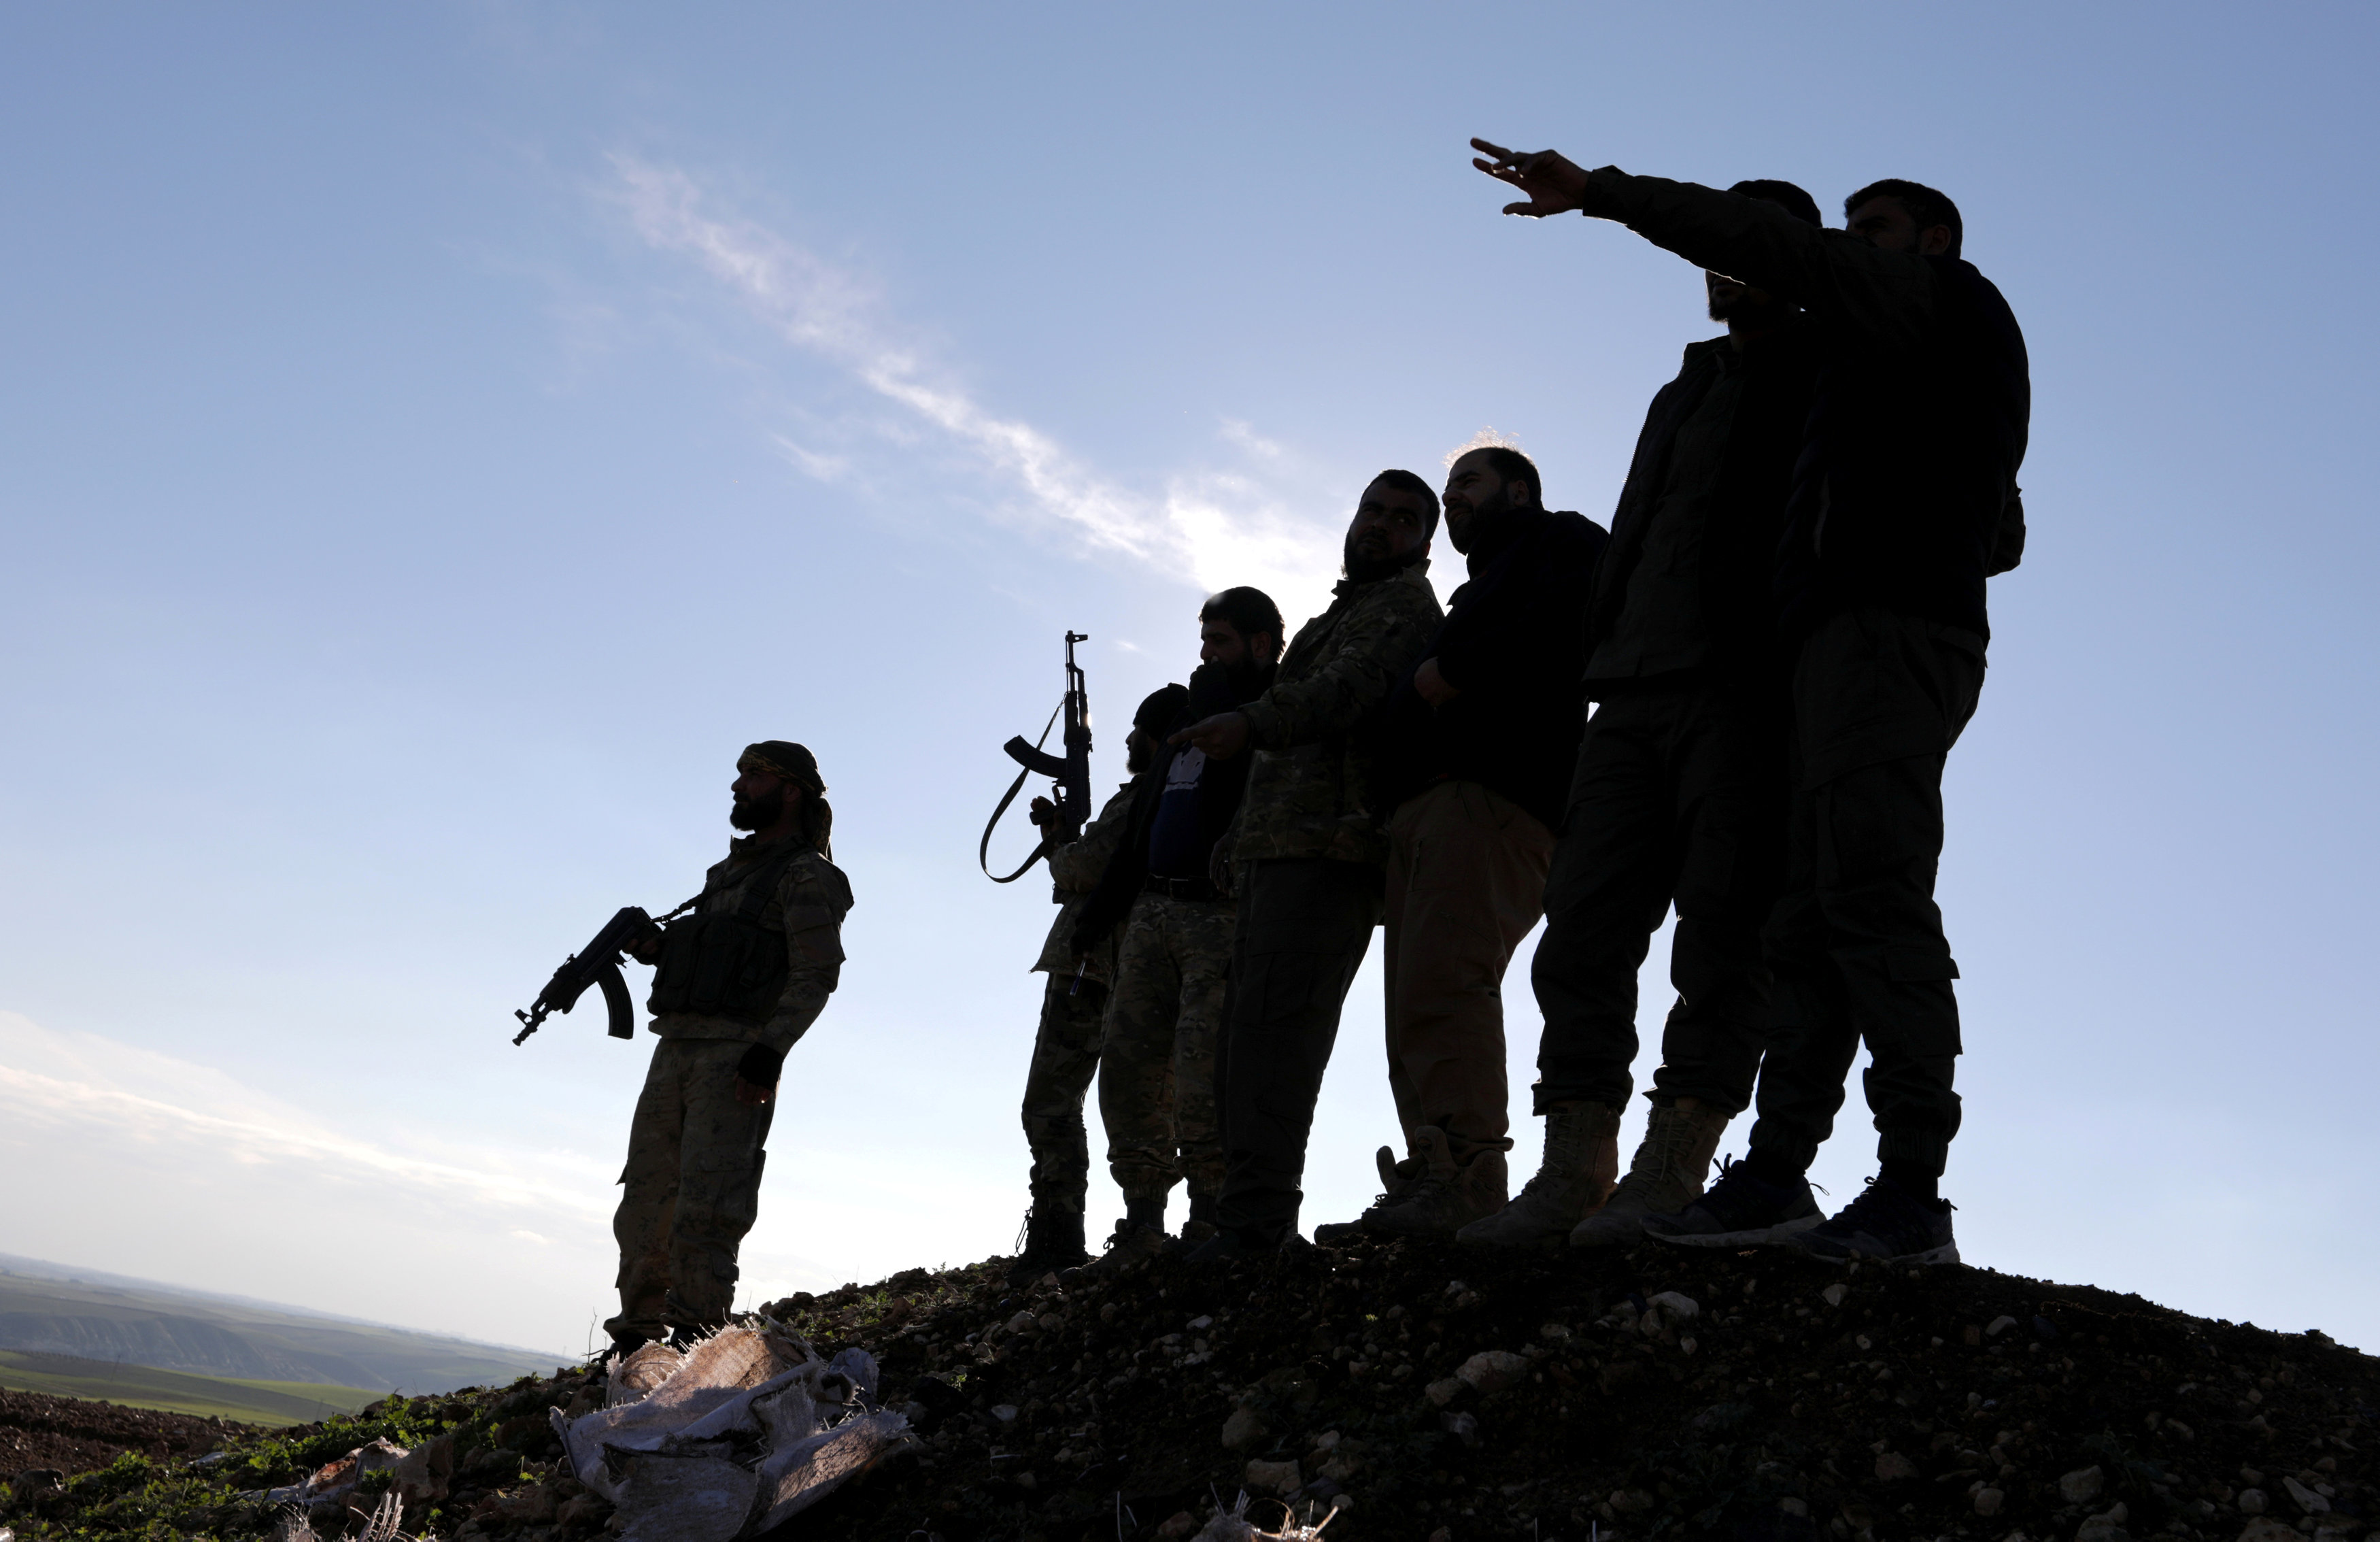 أشخاص ينتمون للمعارضة السورية يقفون مع أسلحتهم في ريف منبج، شمال سوريا. 29 ديسمبر 2018. خليل عشّاوي / رويترز